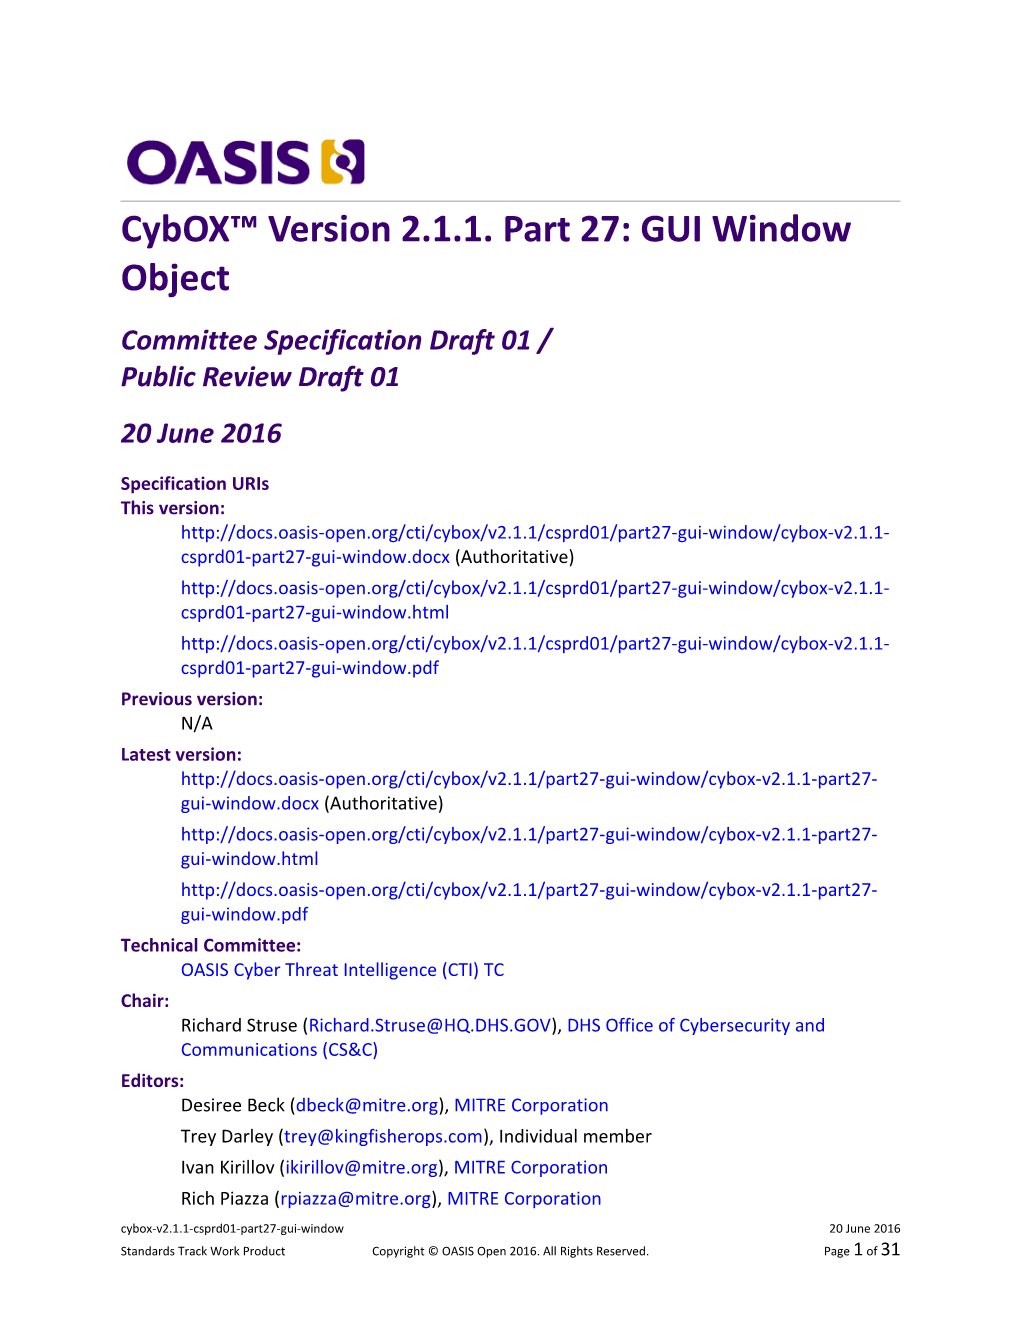 Cybox Version 2.1.1. Part 27: GUI Window Object